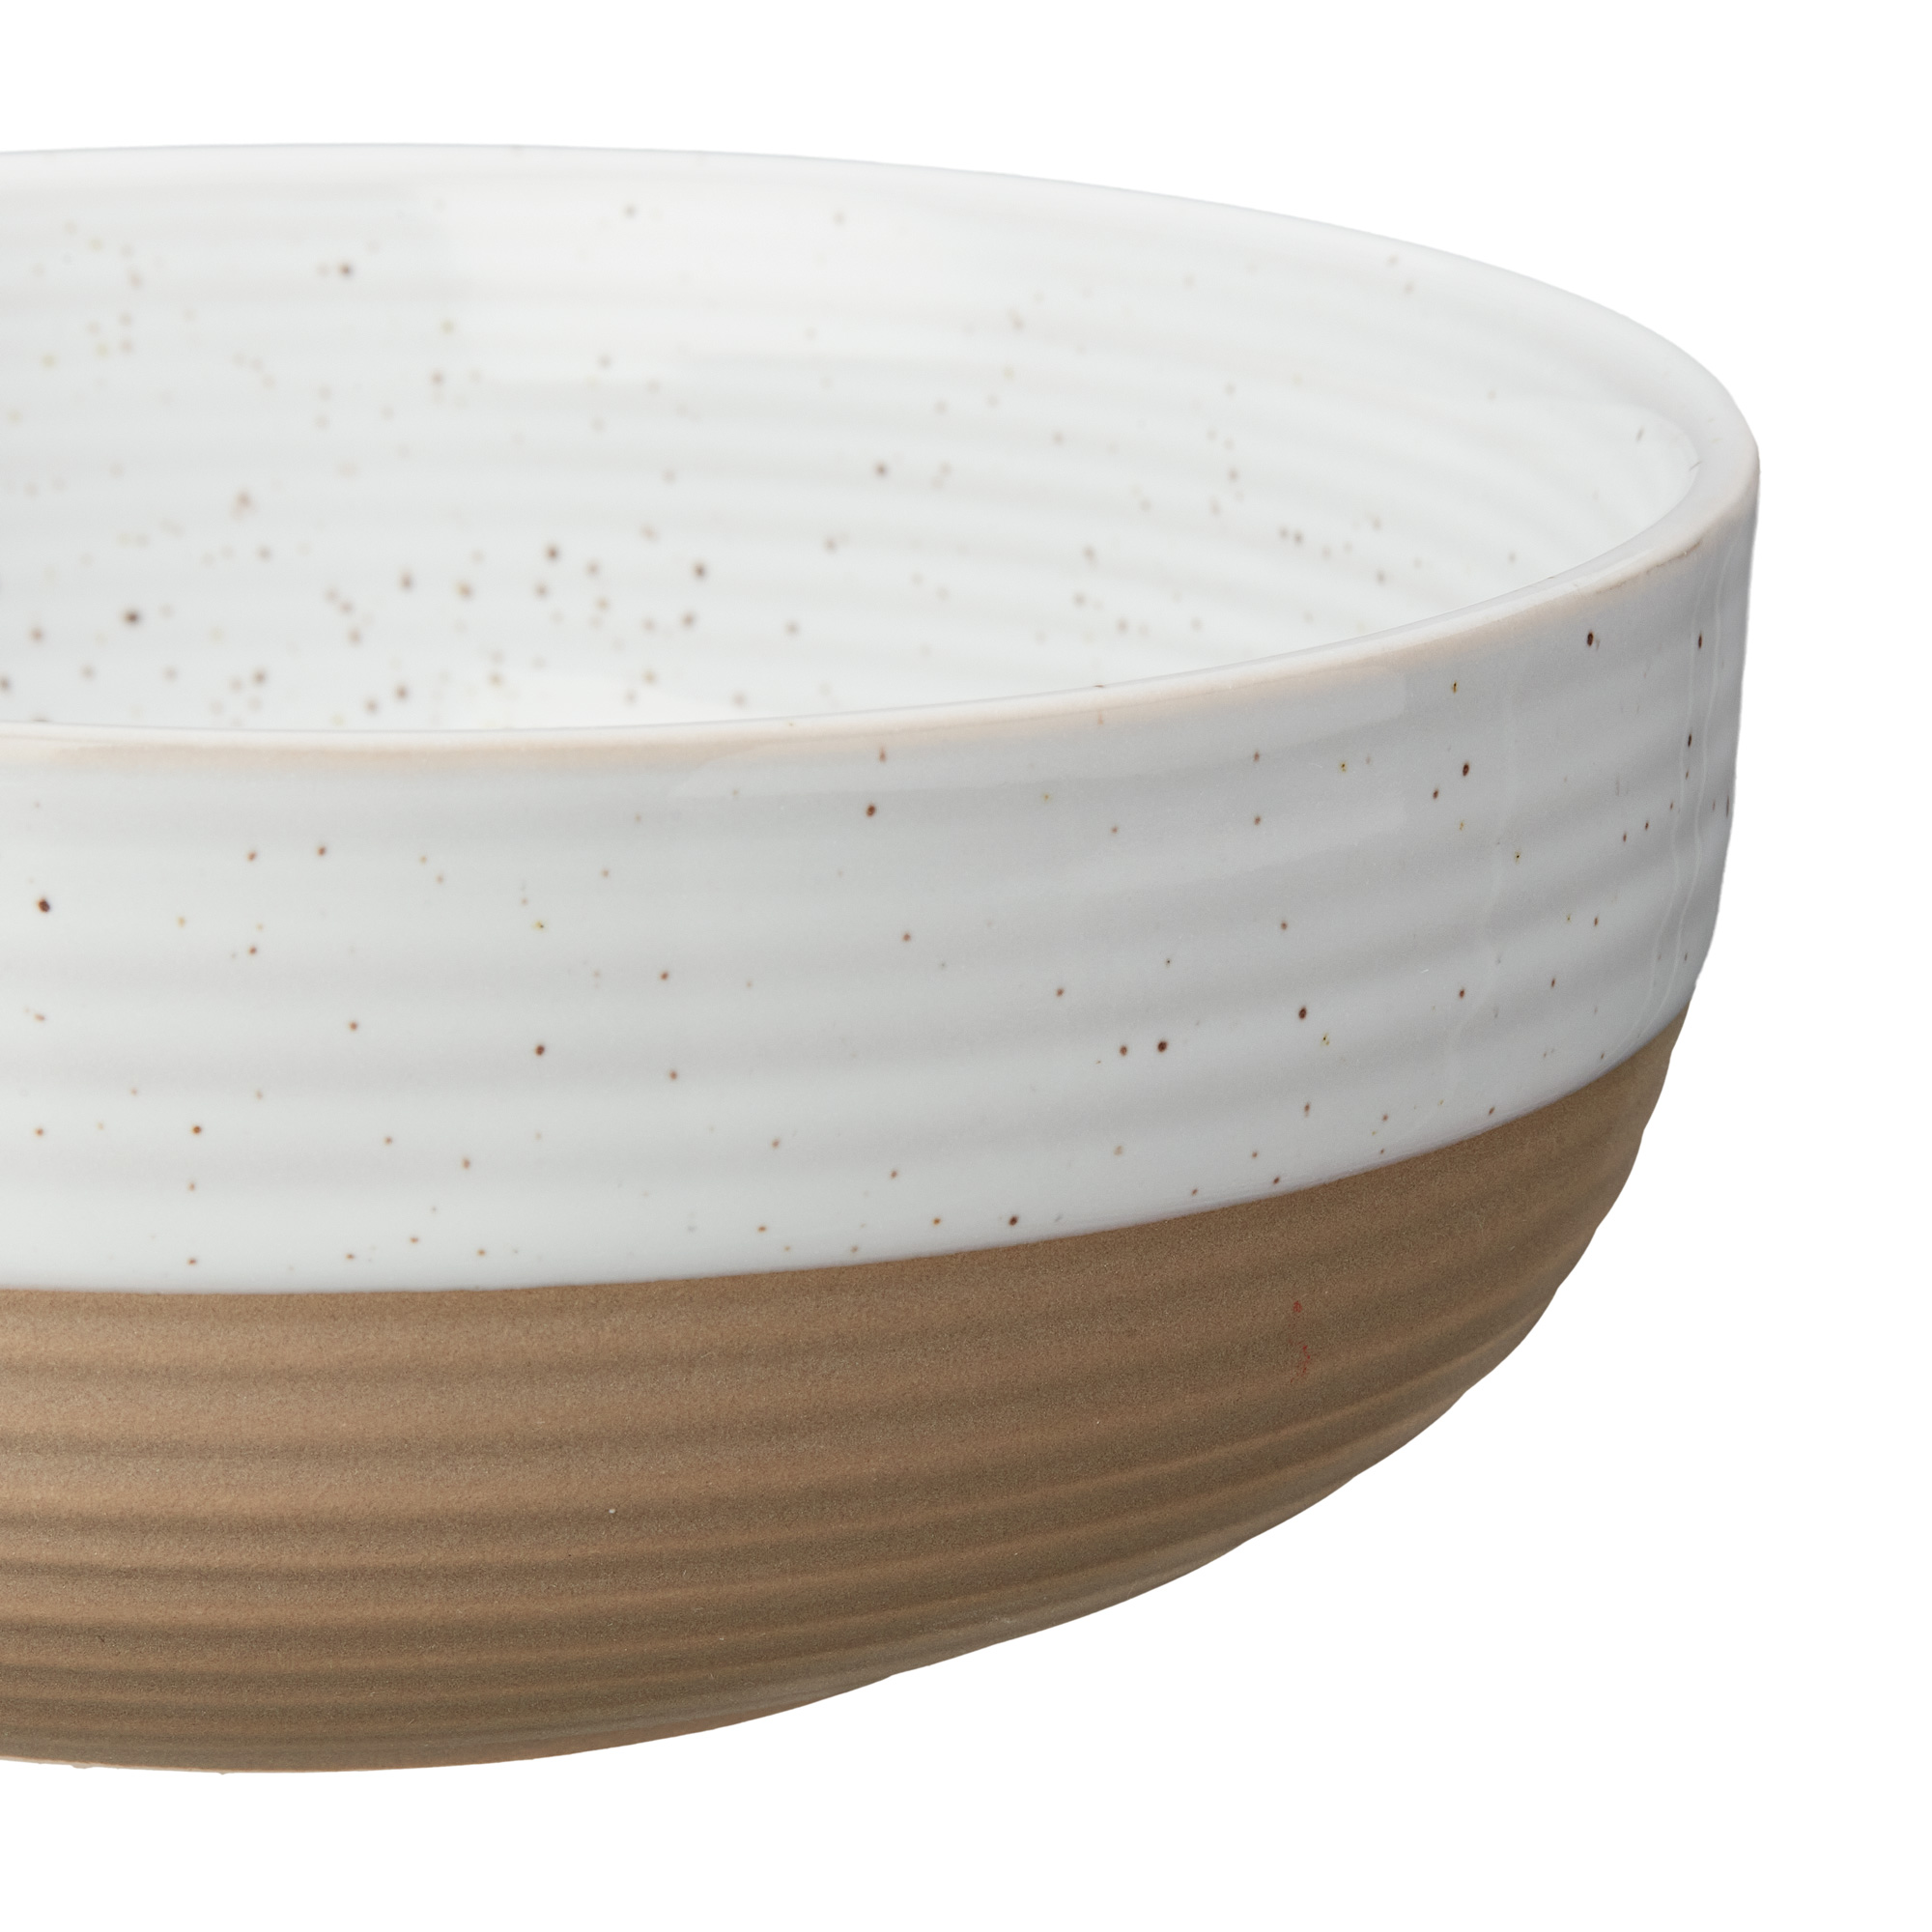 Better Homes & Gardens- Abott White Round Stoneware 16-Piece Dinnerware Set - image 3 of 12